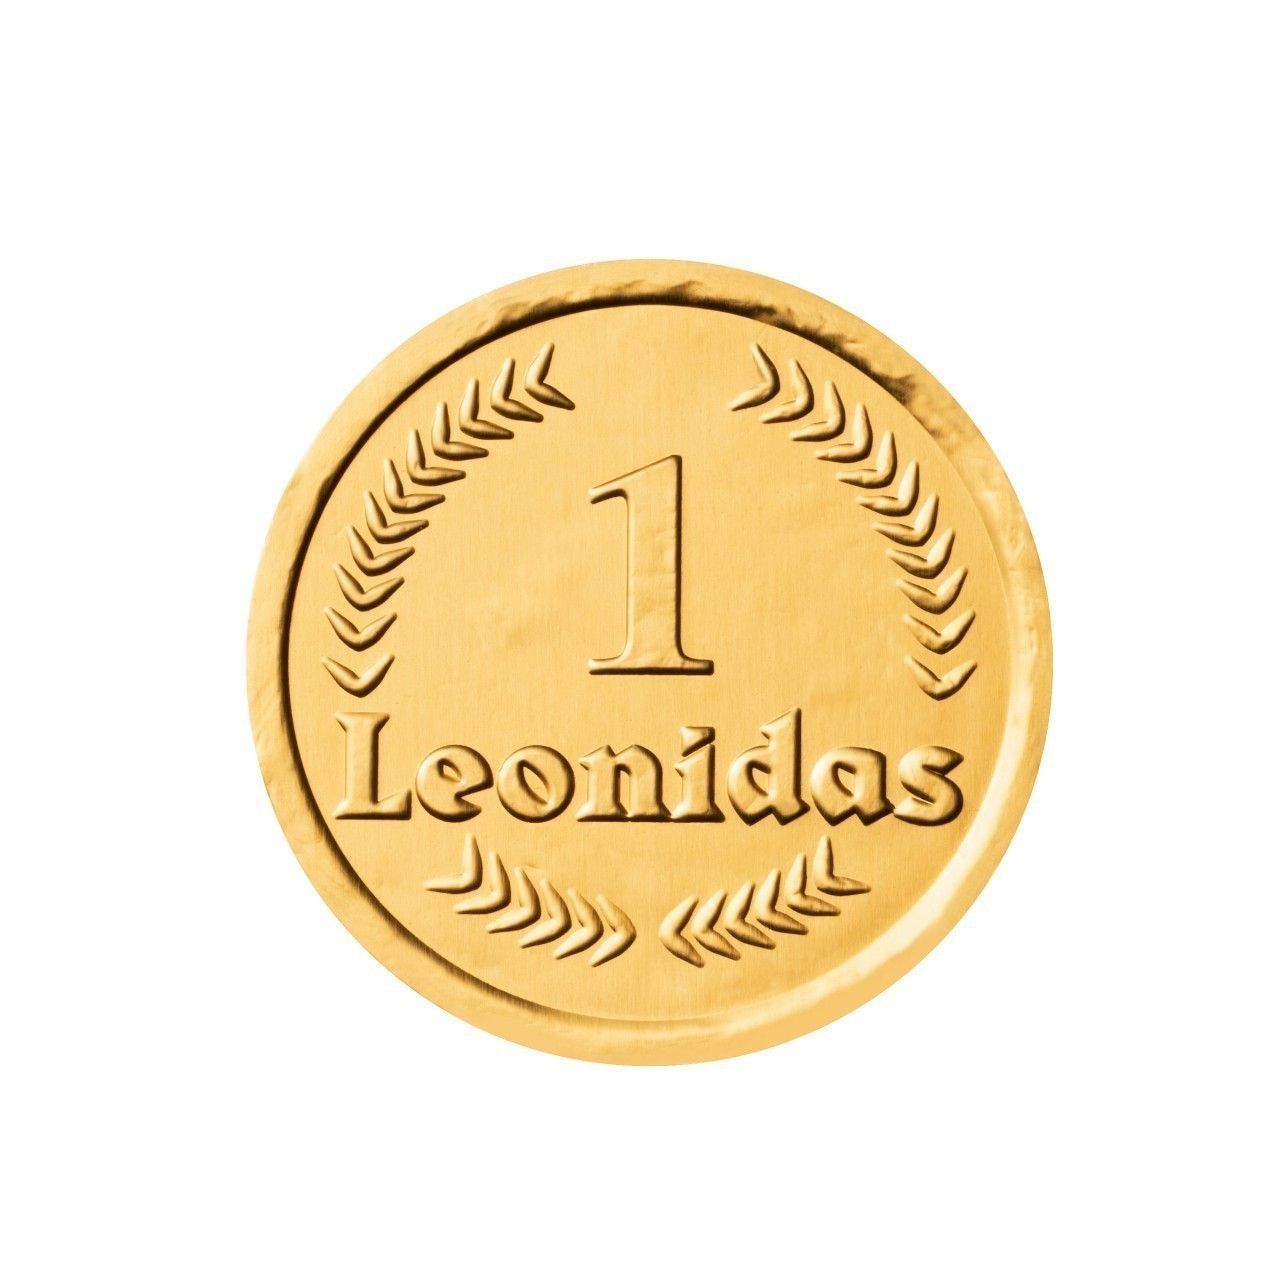 LEONIDAS - PIECES EN CHOCOLAT AU LAIT 